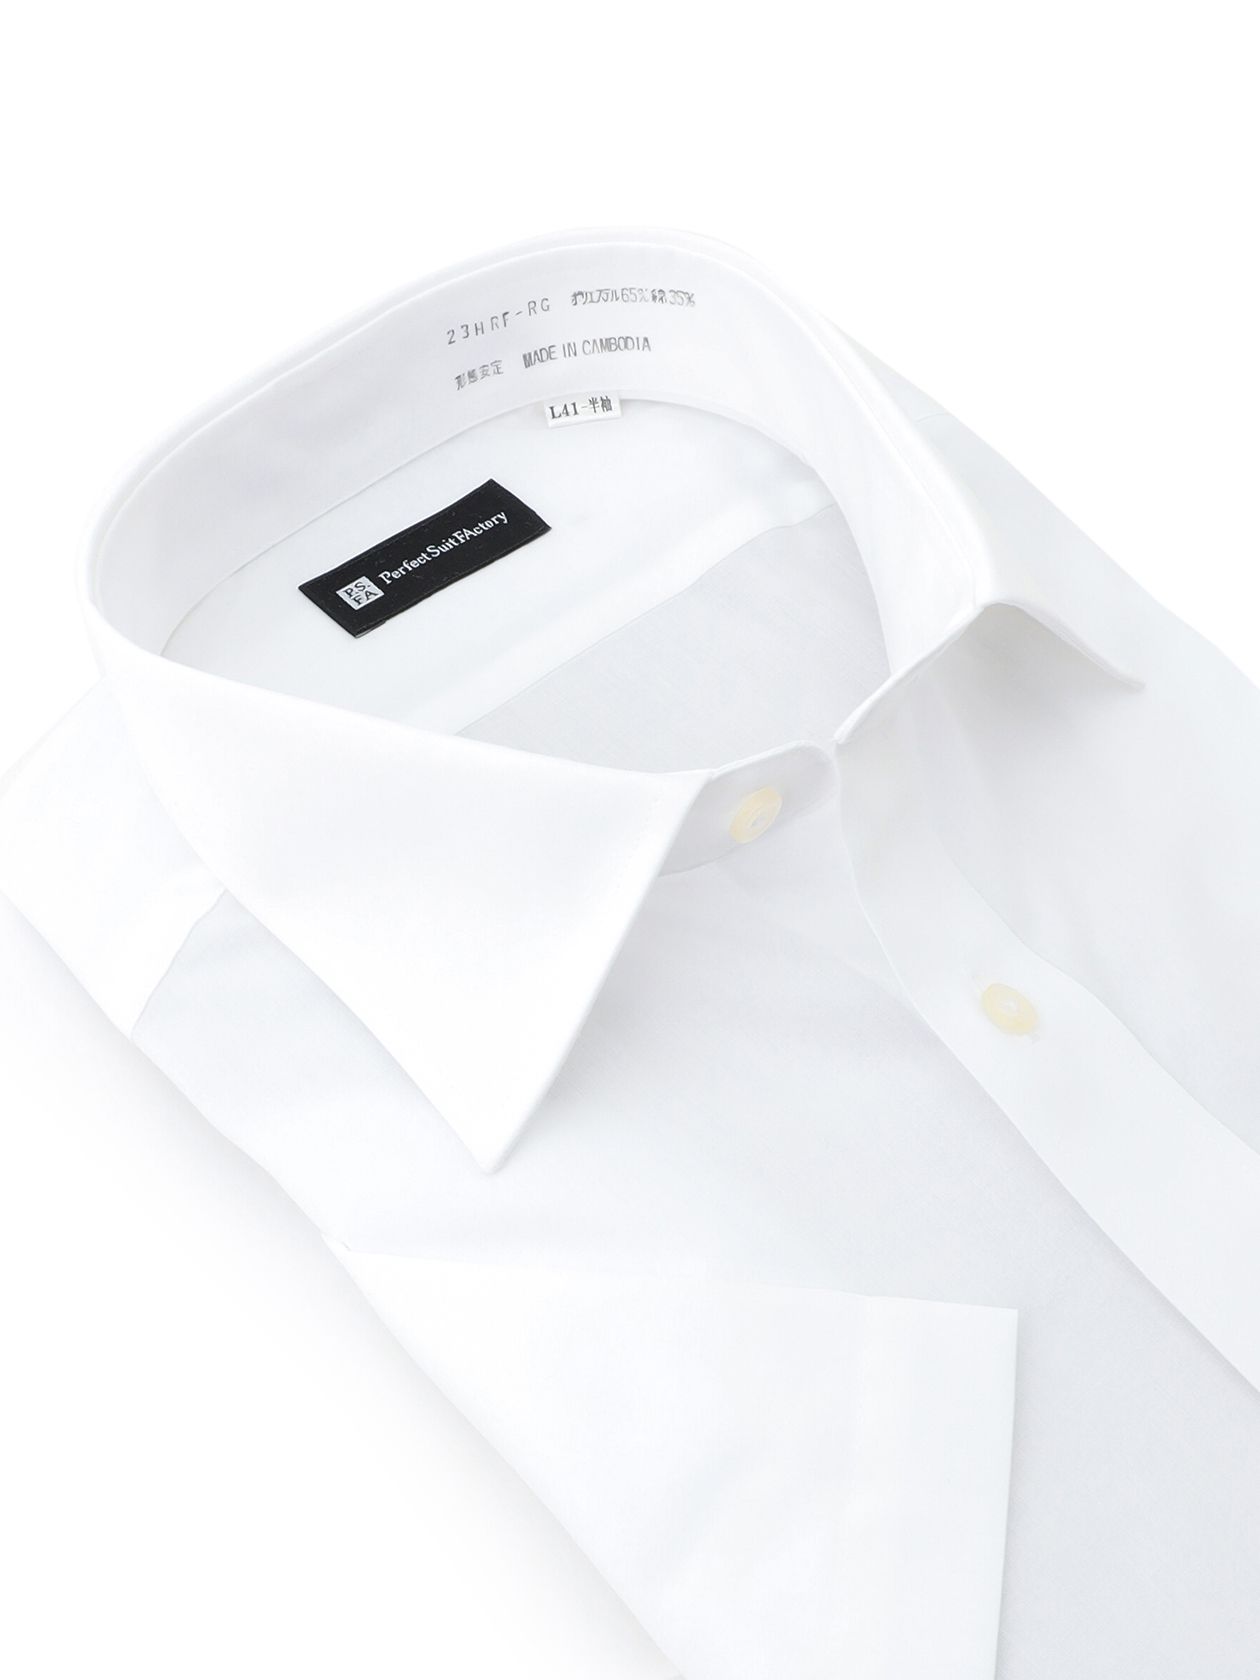  形態安定 シャツ シャツ ホワイト シャツ クラシコモデル(ナチュラルシルエット)